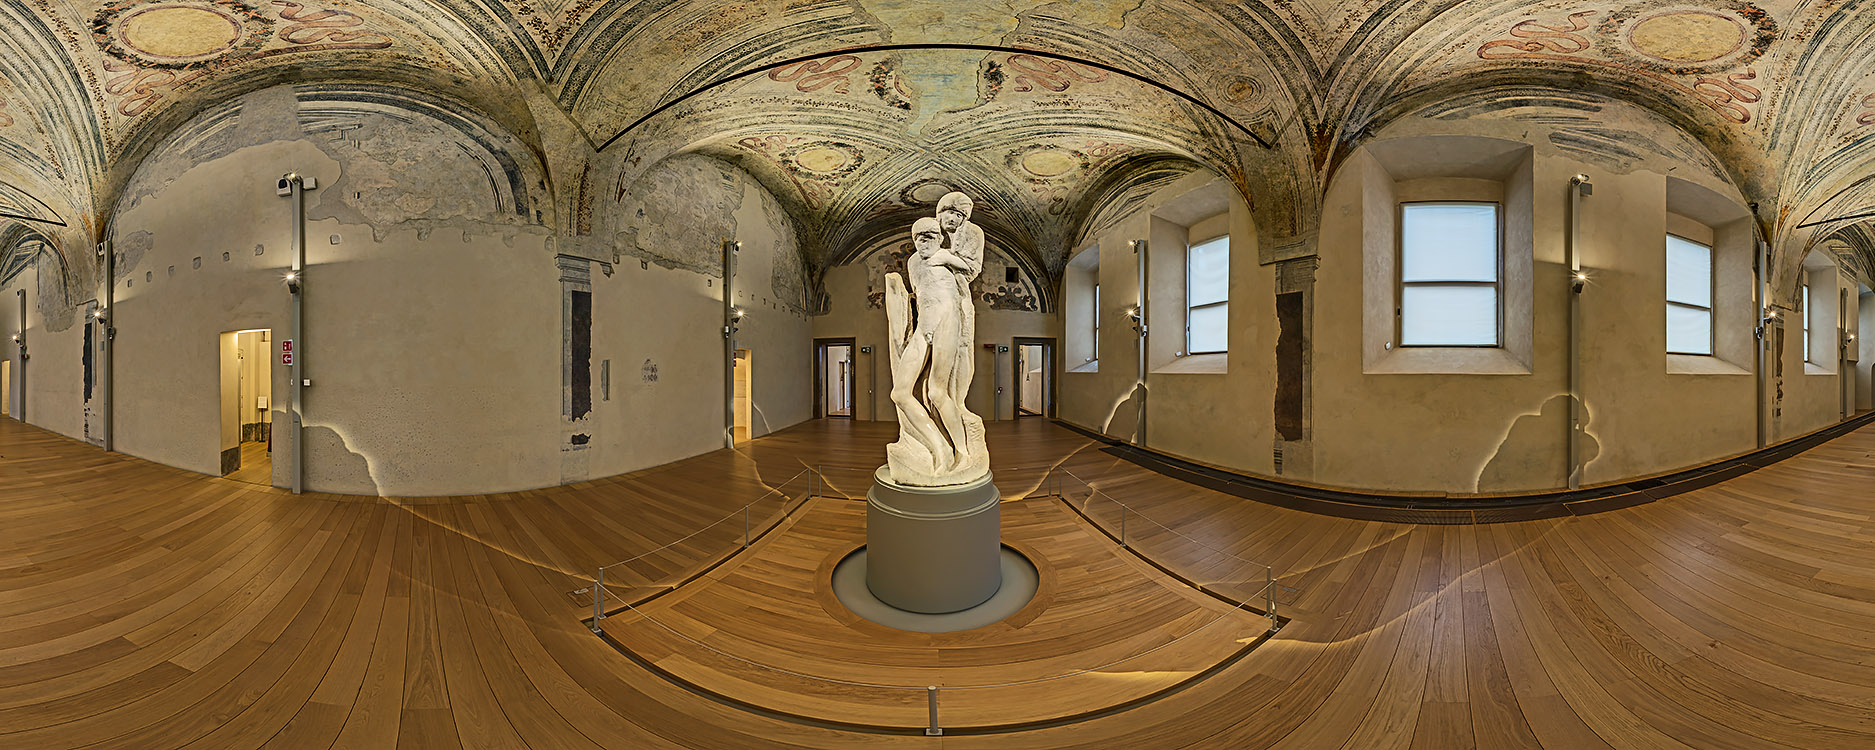 The world-famous Pietà Rondanini by Michelangelo Buonarroti